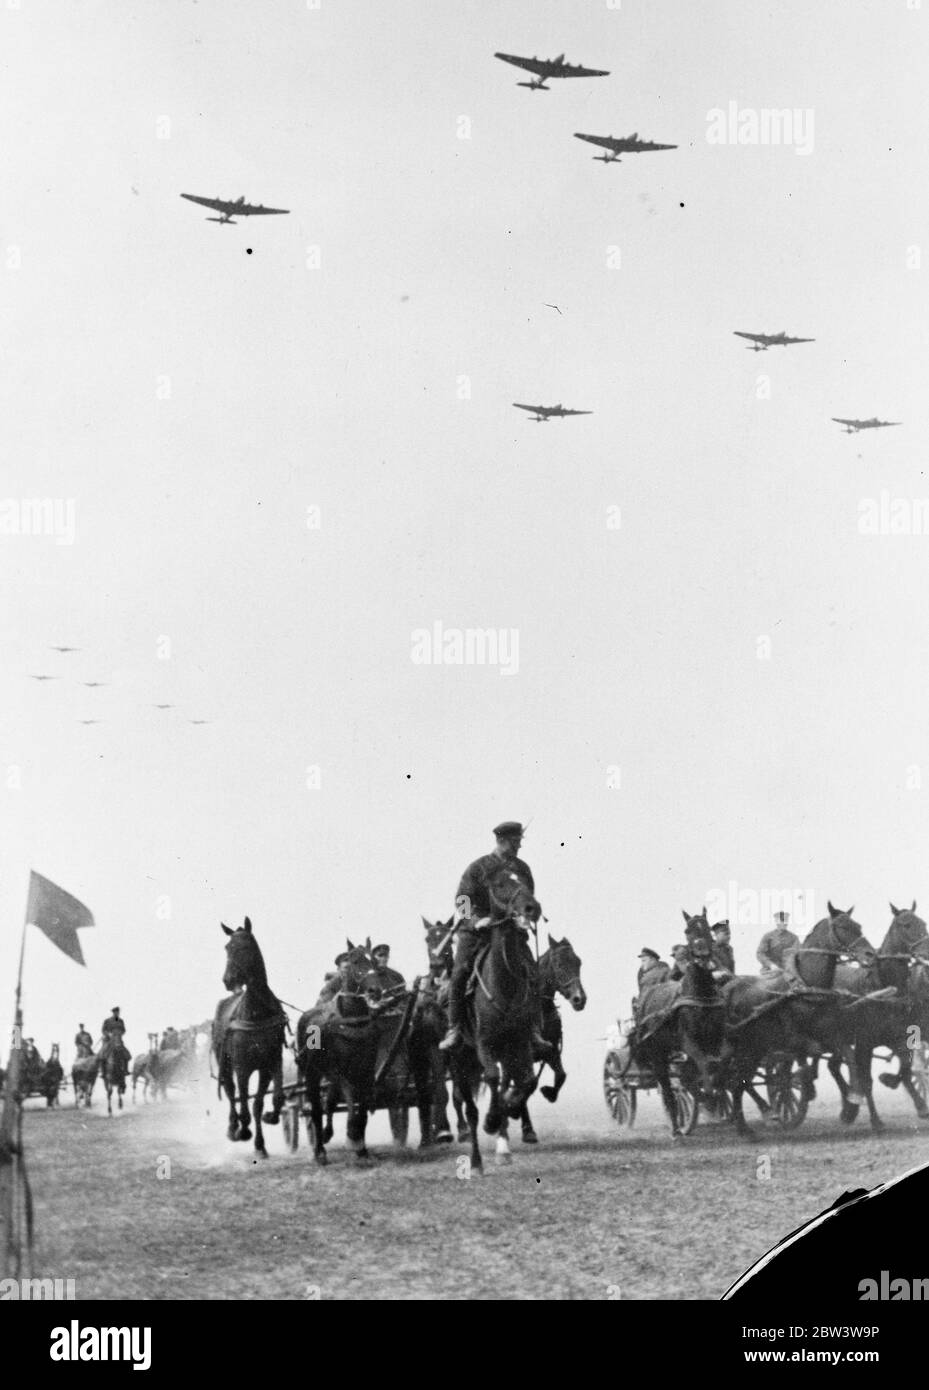 Die Rote Armee führt ihre größten Manöver durch. Sowjetische bewaffnete Macht auf Parade . Militärflugzeuge fliegen über Maschinengewehrwagen von Kavallerie gezogen. 1935 Stockfoto